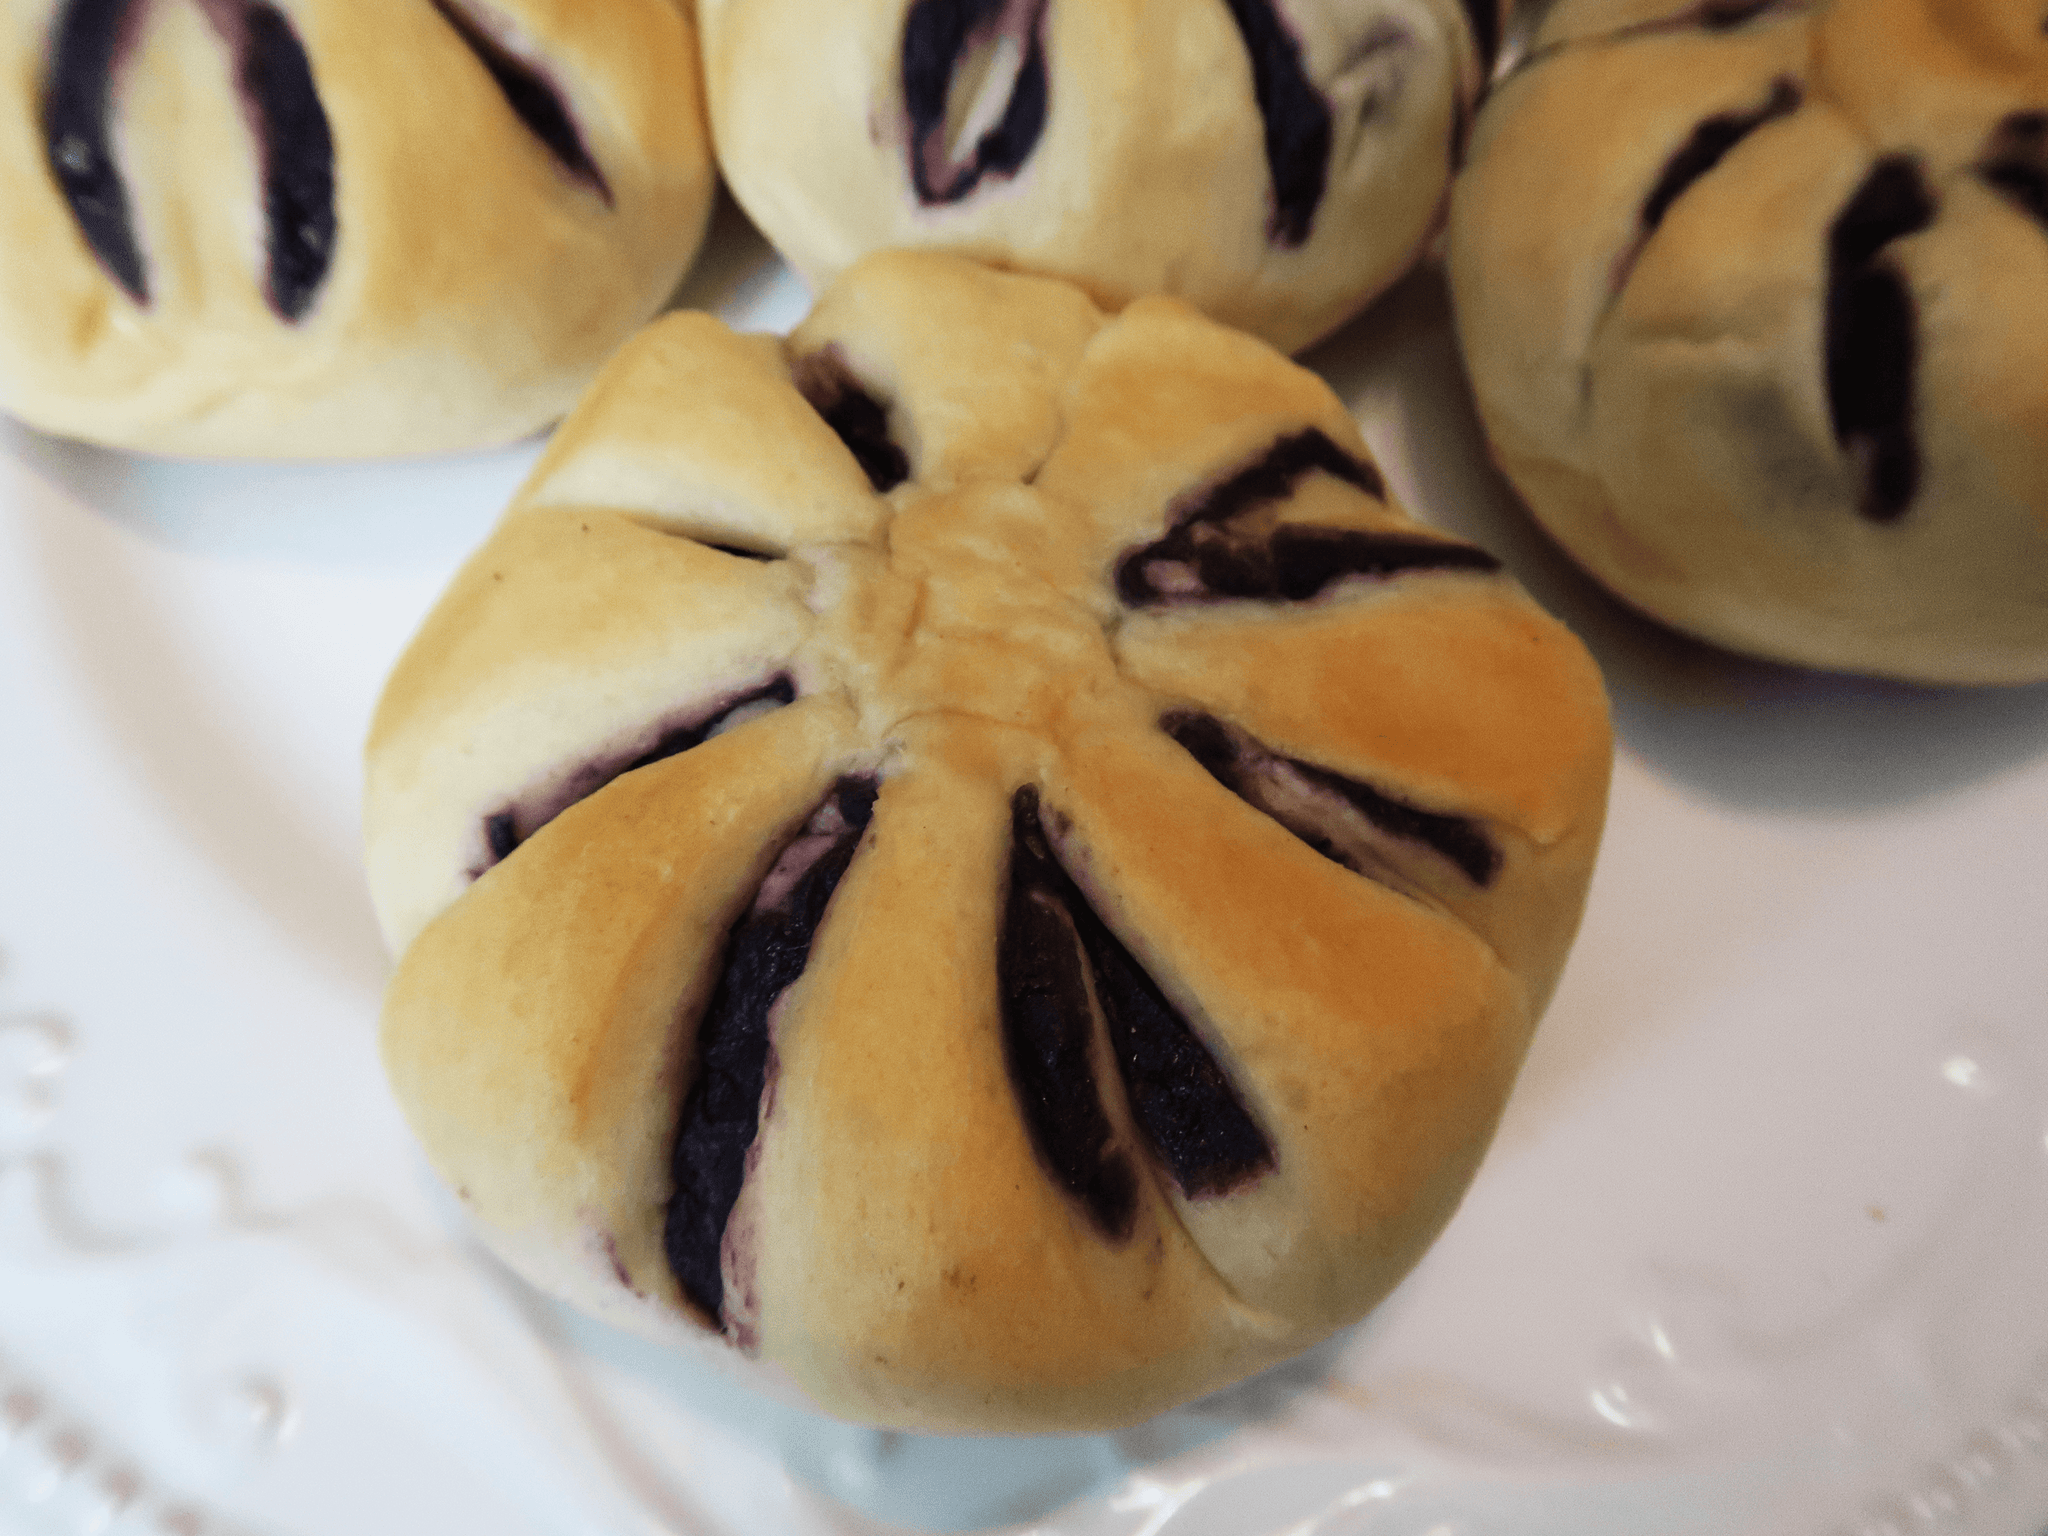 Filipino Squash (Ube) Bread | Fresh Baked with LOVE - 6 Pieces Per Order - Liz's Filipino Desserts